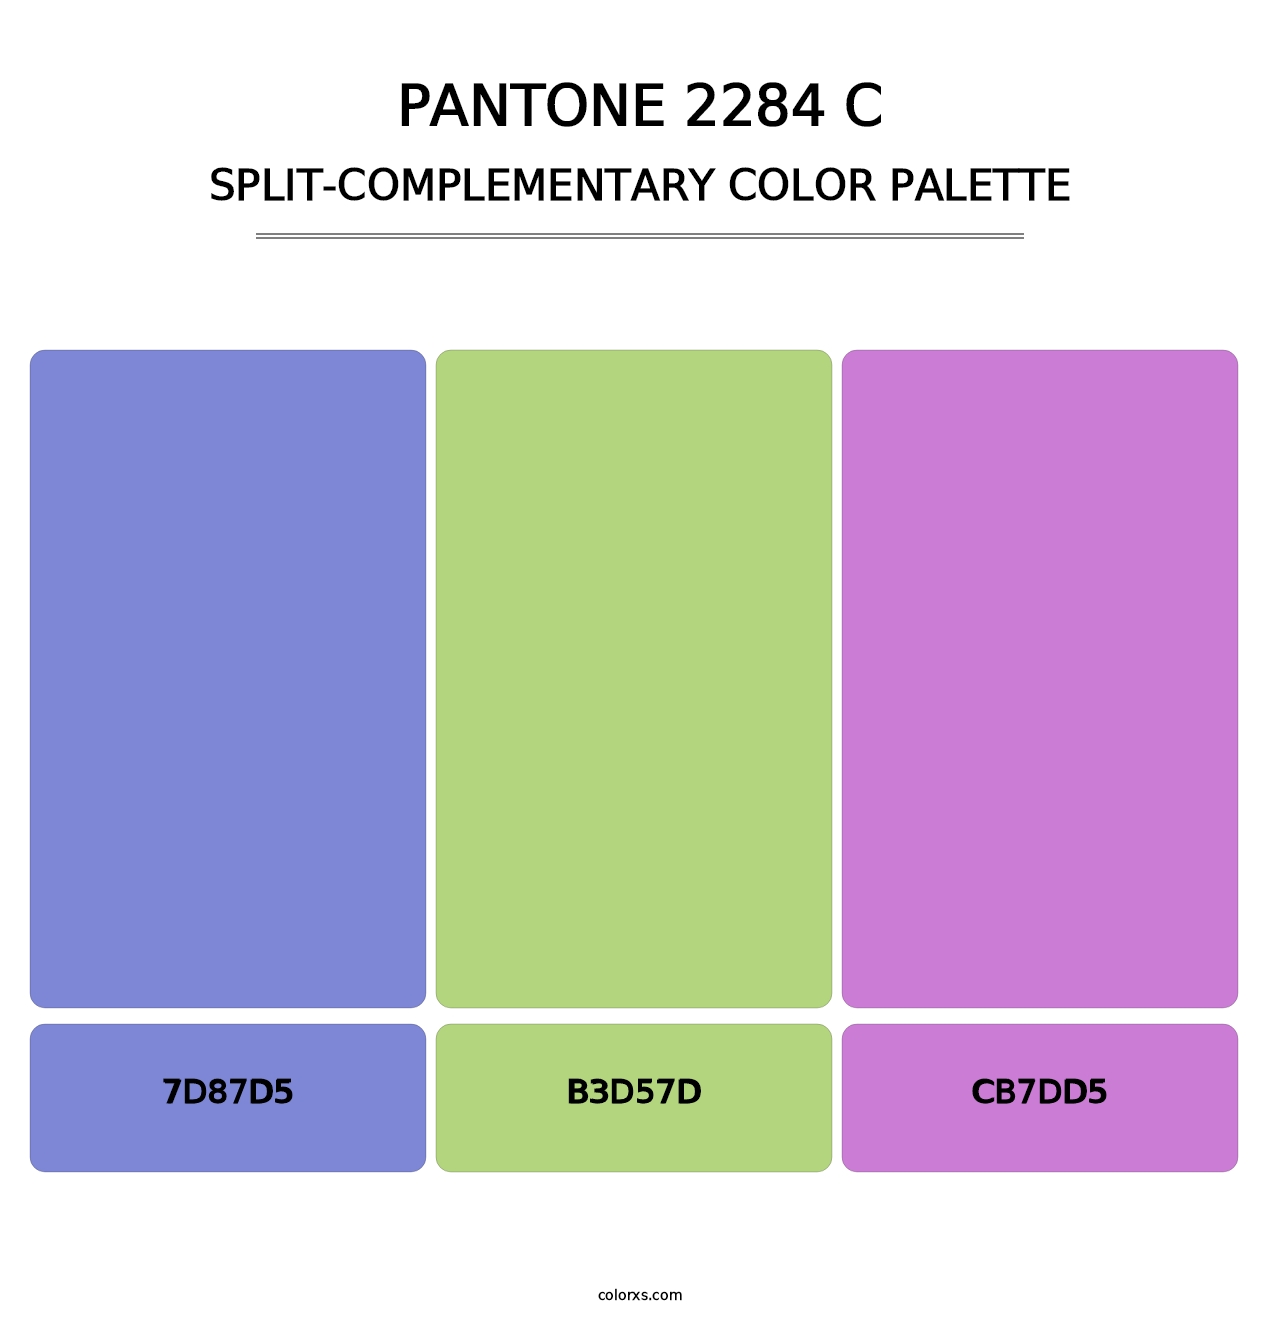 PANTONE 2284 C - Split-Complementary Color Palette